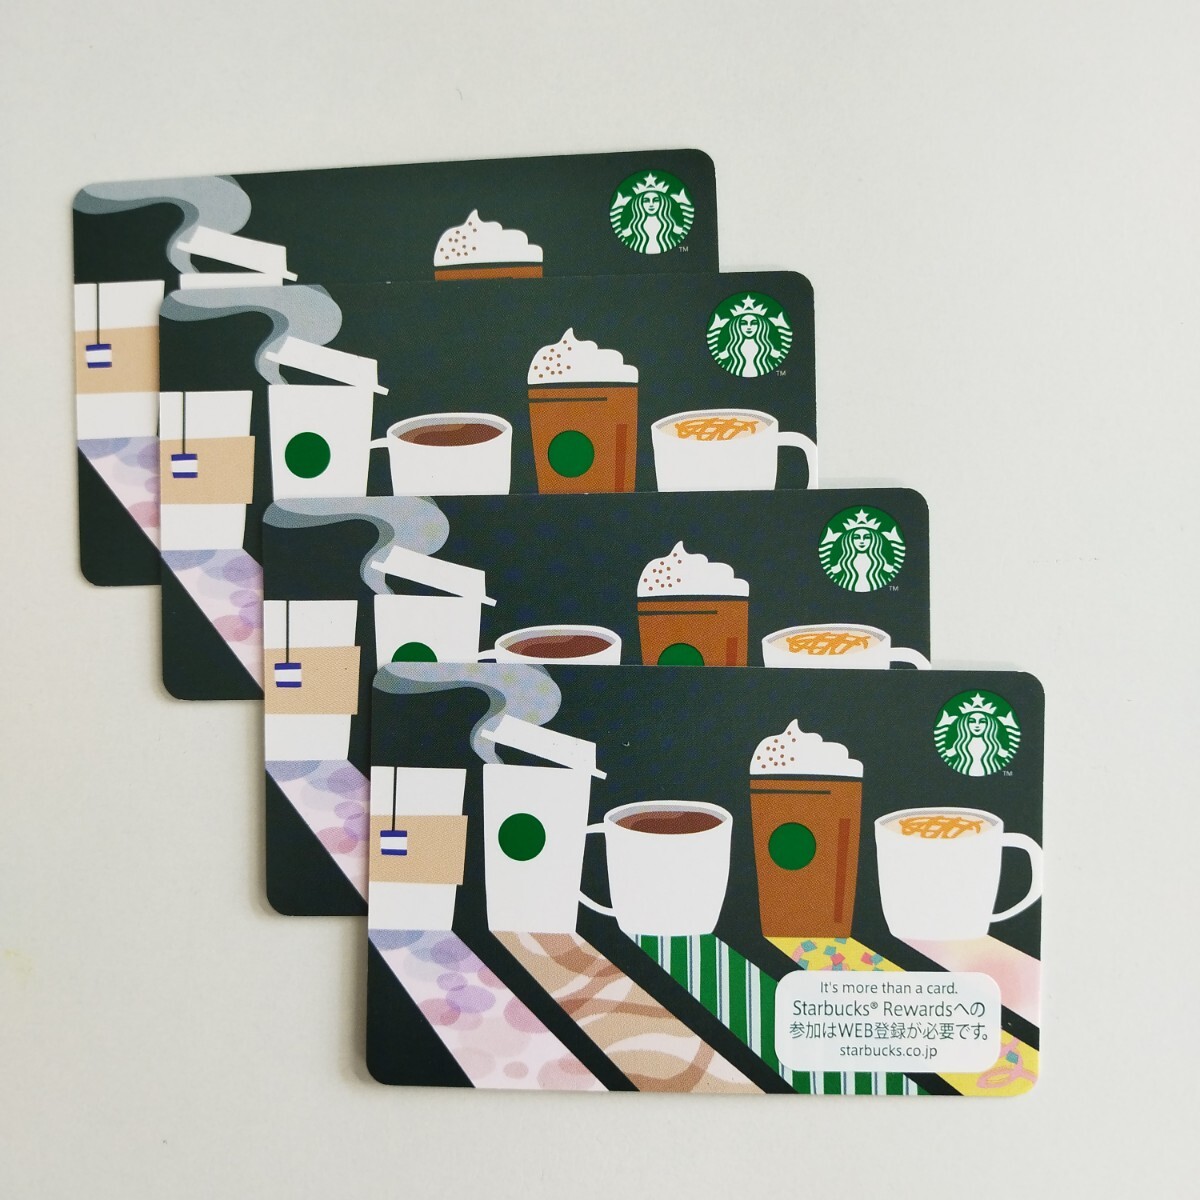  Starbucks подарок карта 500 иен ×4 листов (2,000 иен минут ) иметь временные ограничения действия нет быстрое решение! номер сообщение . возможность!